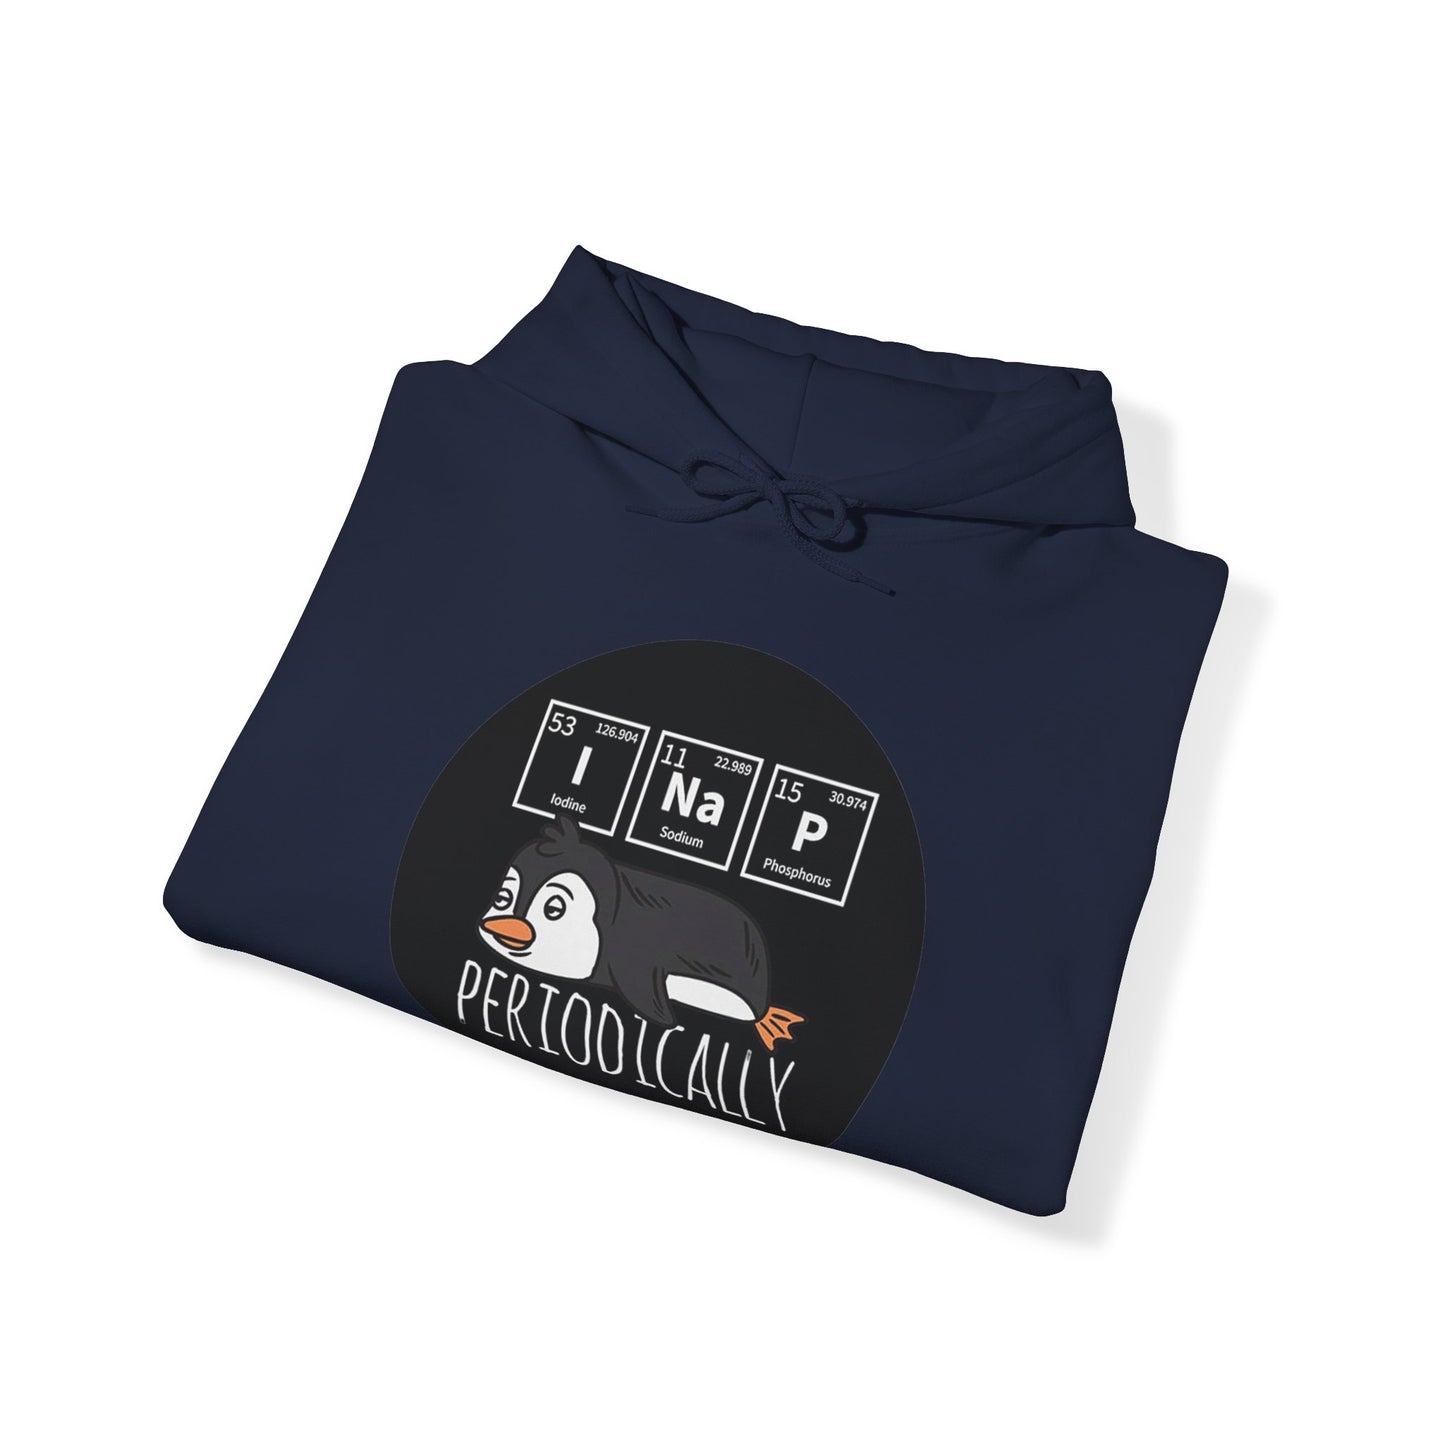 Periodically I NaP Penguin  Unisex Heavy Blend™ Hooded Sweatshirt